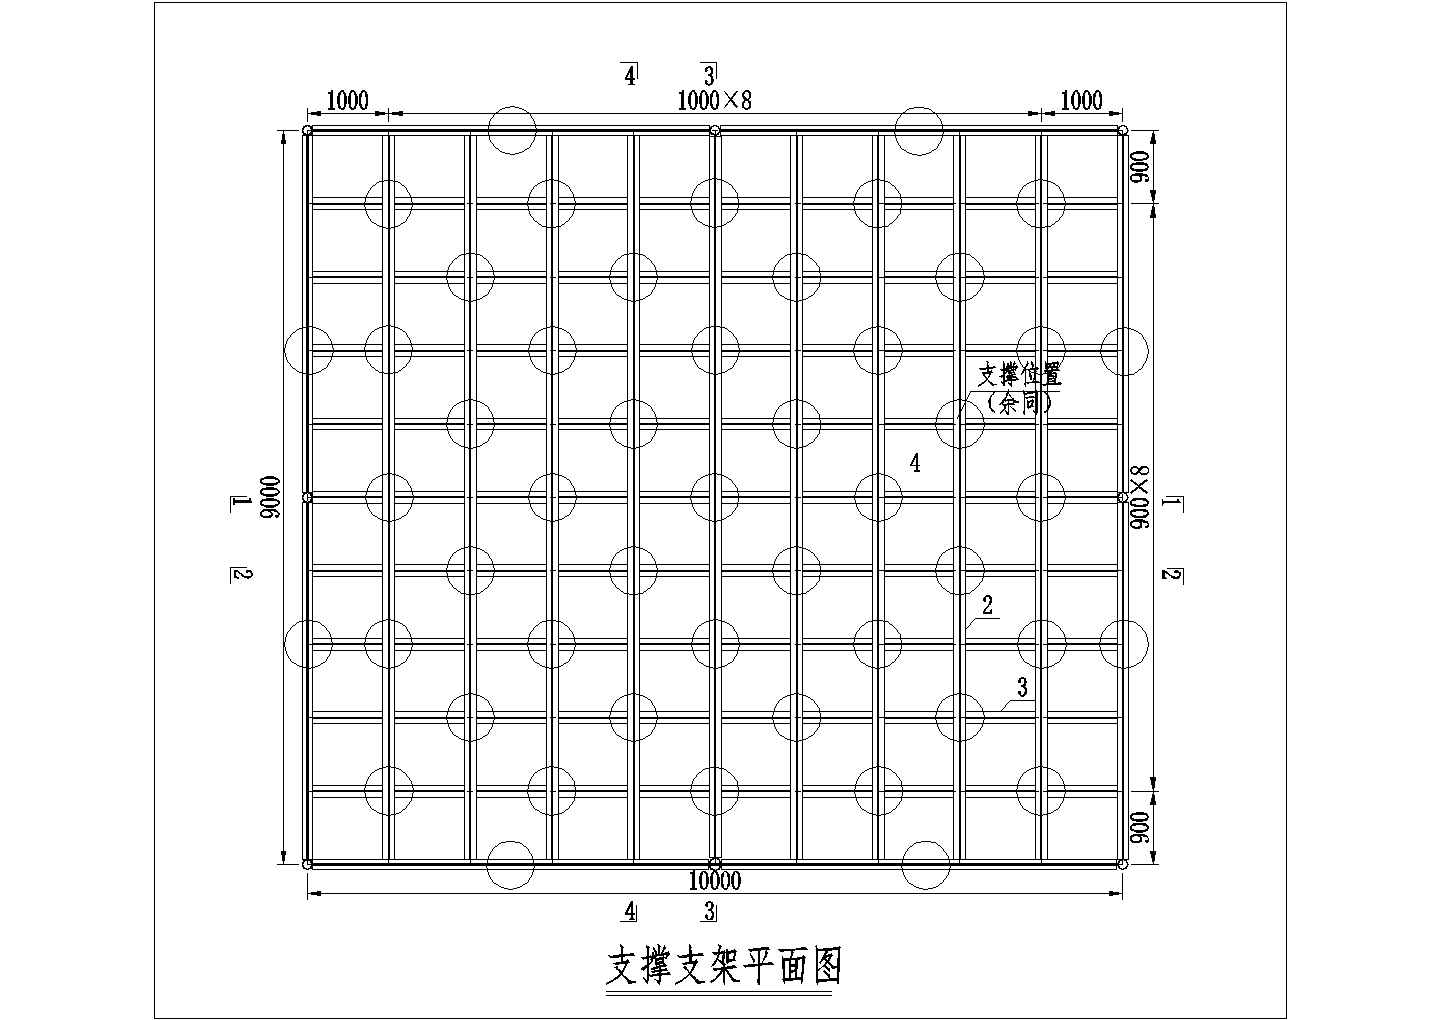 重庆市某氮肥厂单层钢结构圆筒形仓库建筑结构设计CAD图纸